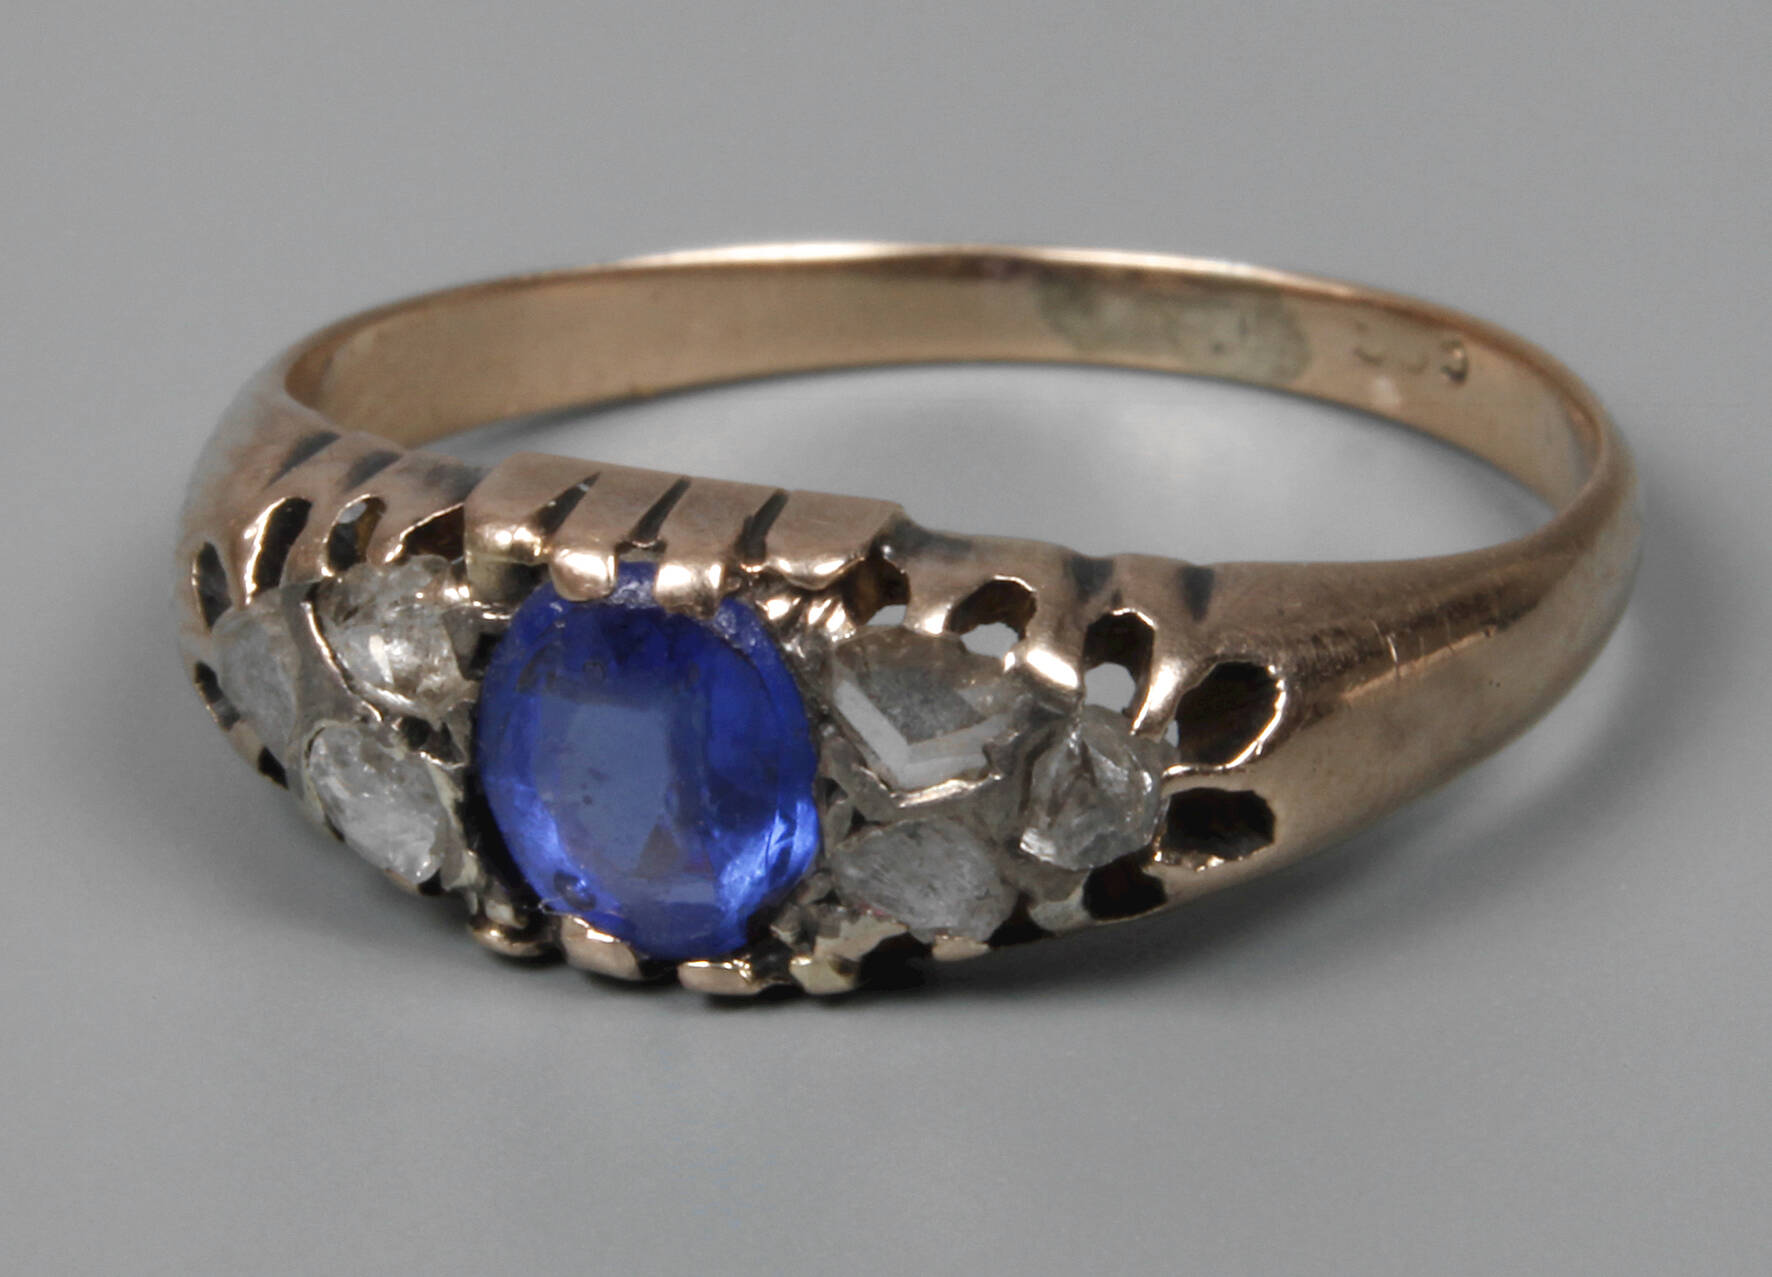 Historischer Ring mit Saphir und Diamanten